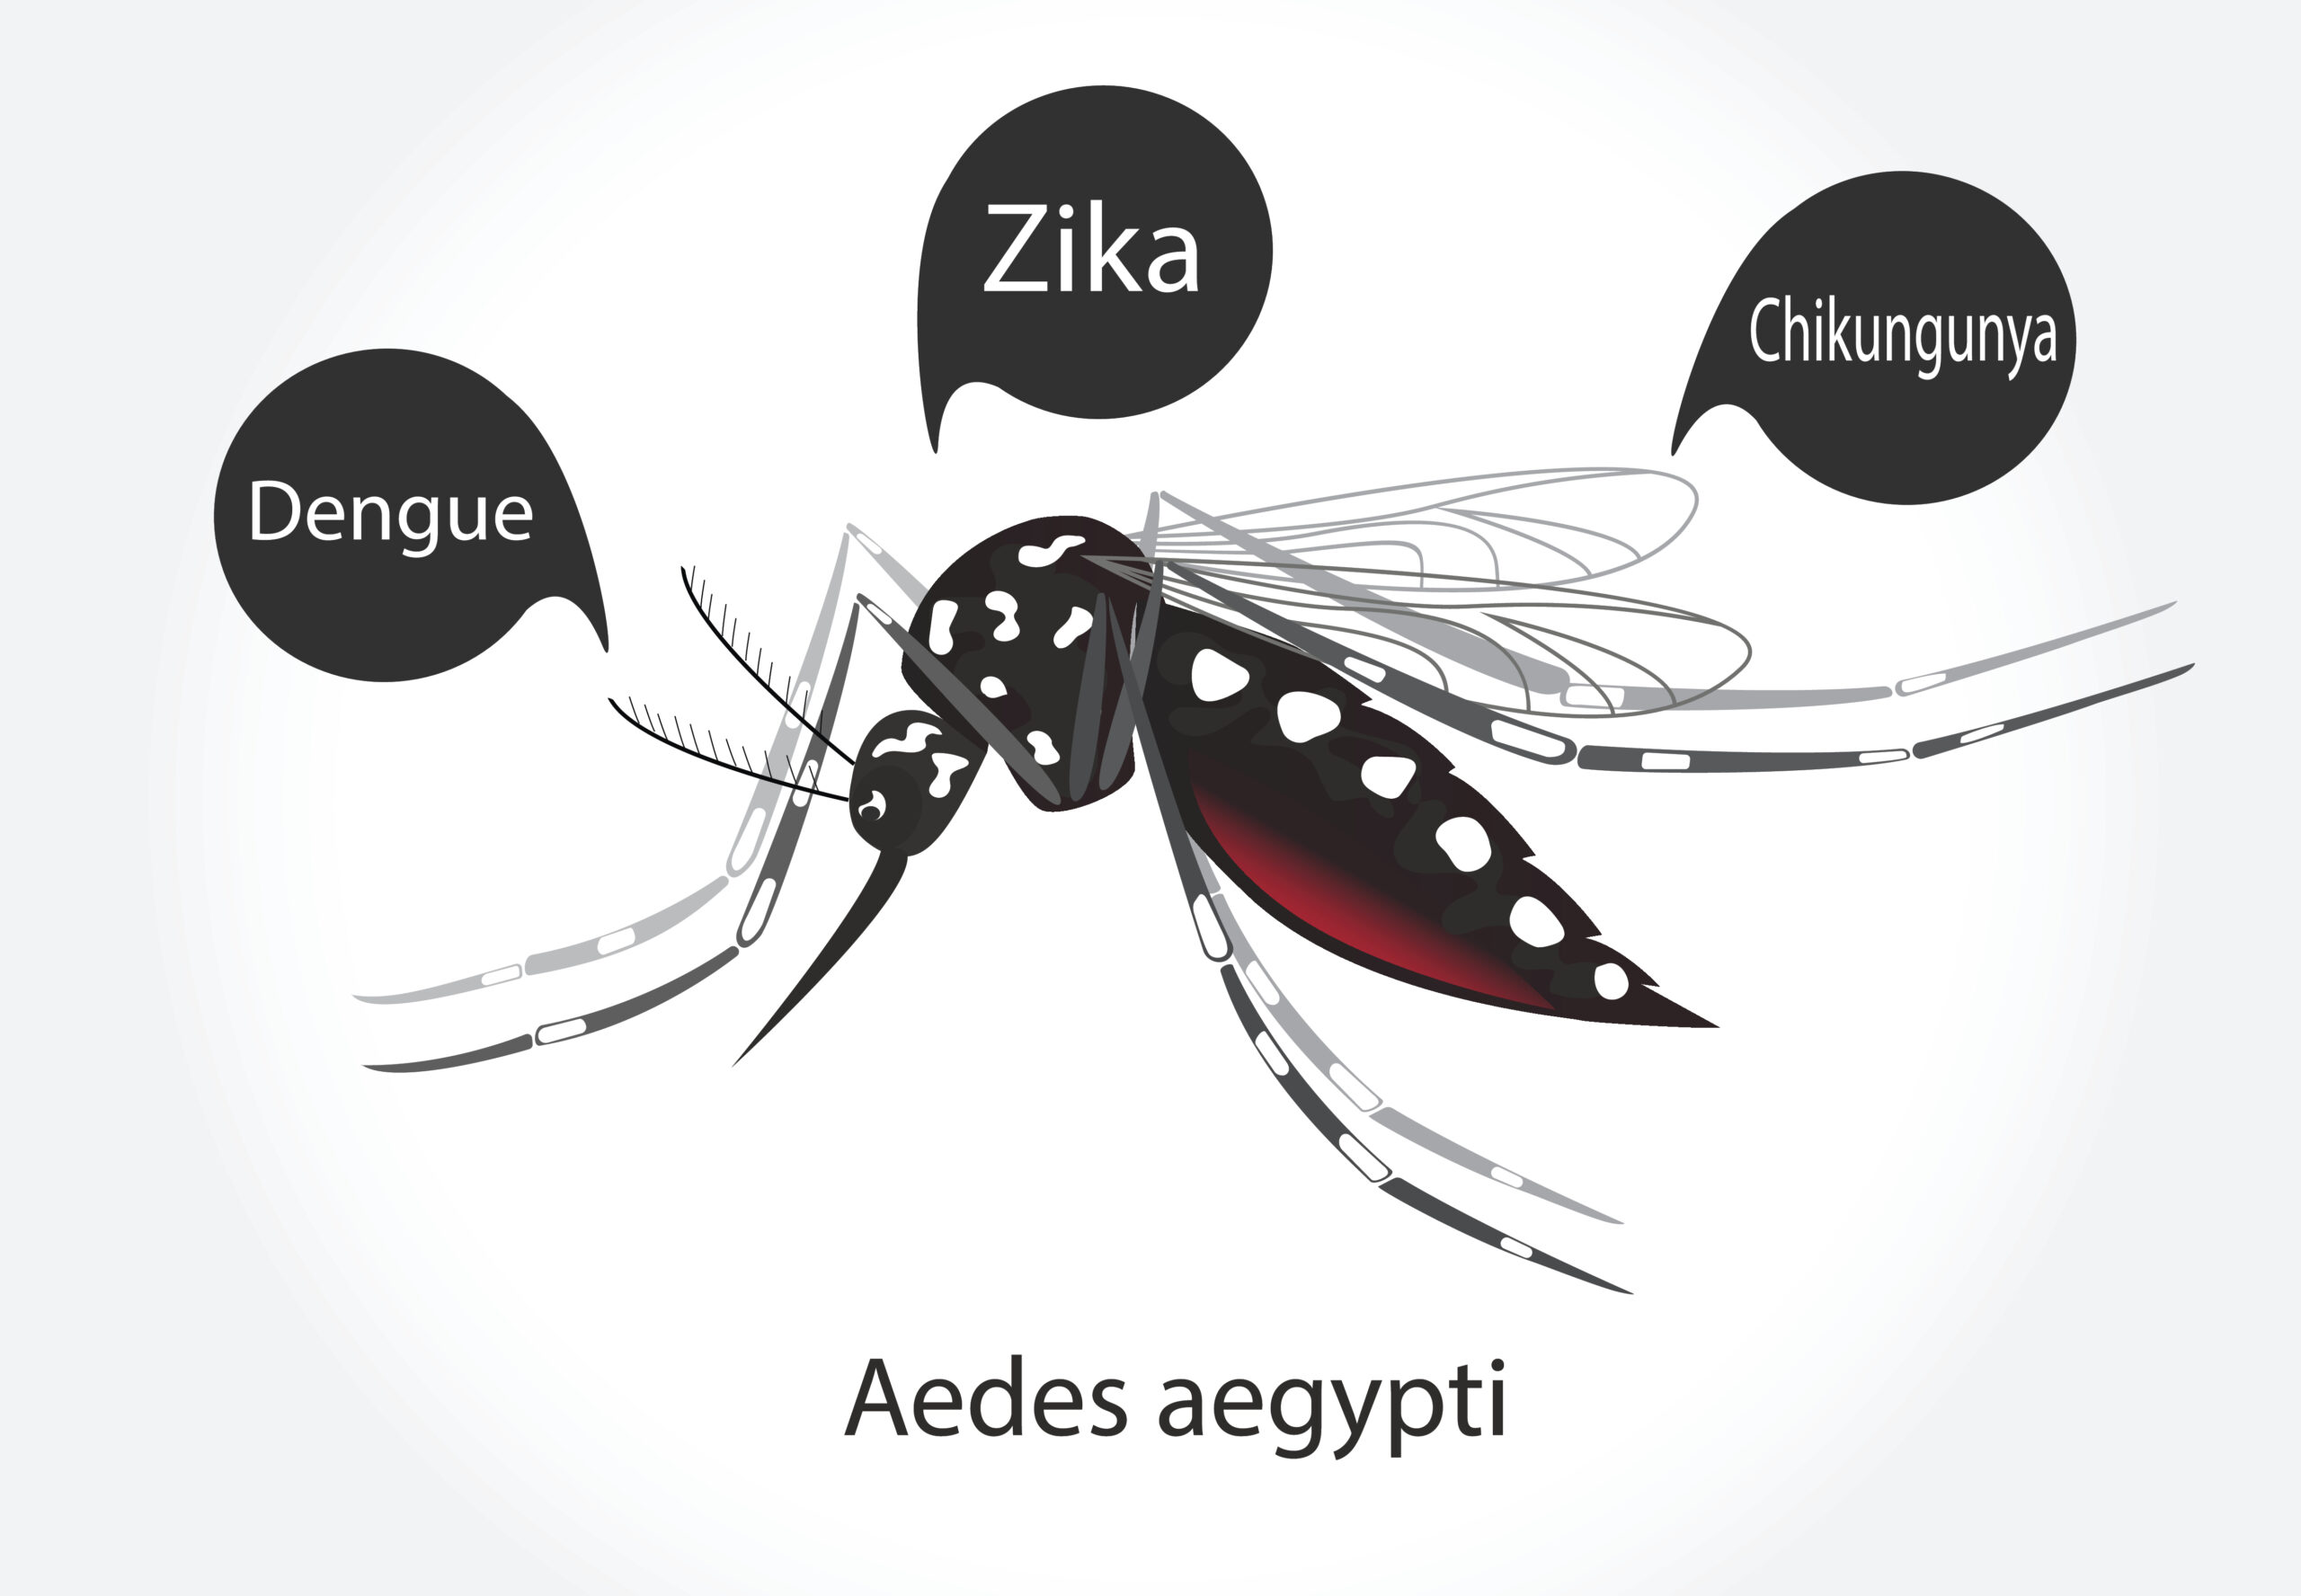 Ilustração de mosquito Aedes aegypti, com balões pretos de diálogo onde lê-se"dengue", "Zika" e "Chikungunya"